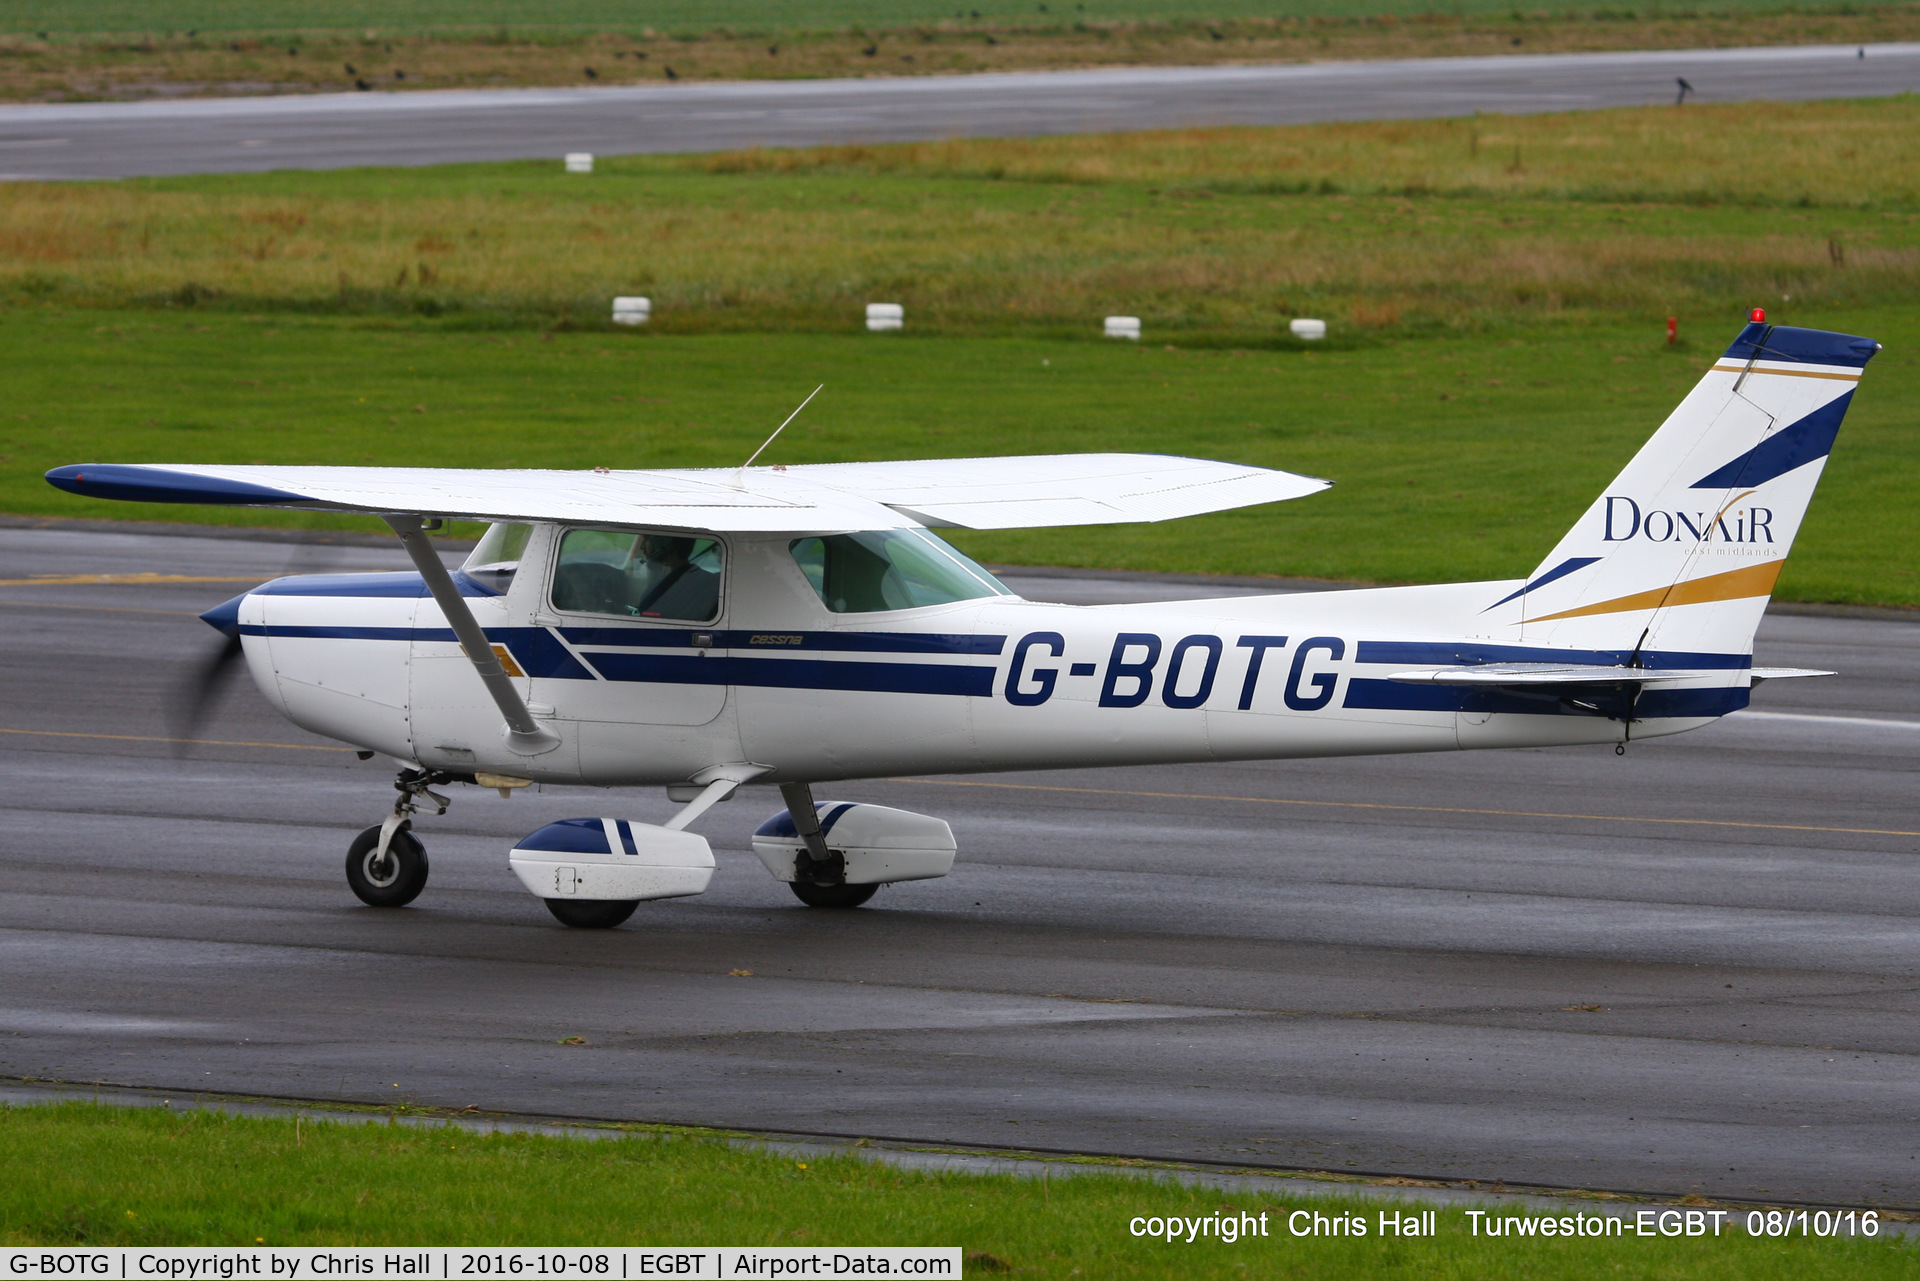 G-BOTG, 1978 Cessna 152 C/N 152-83035, at Turweston